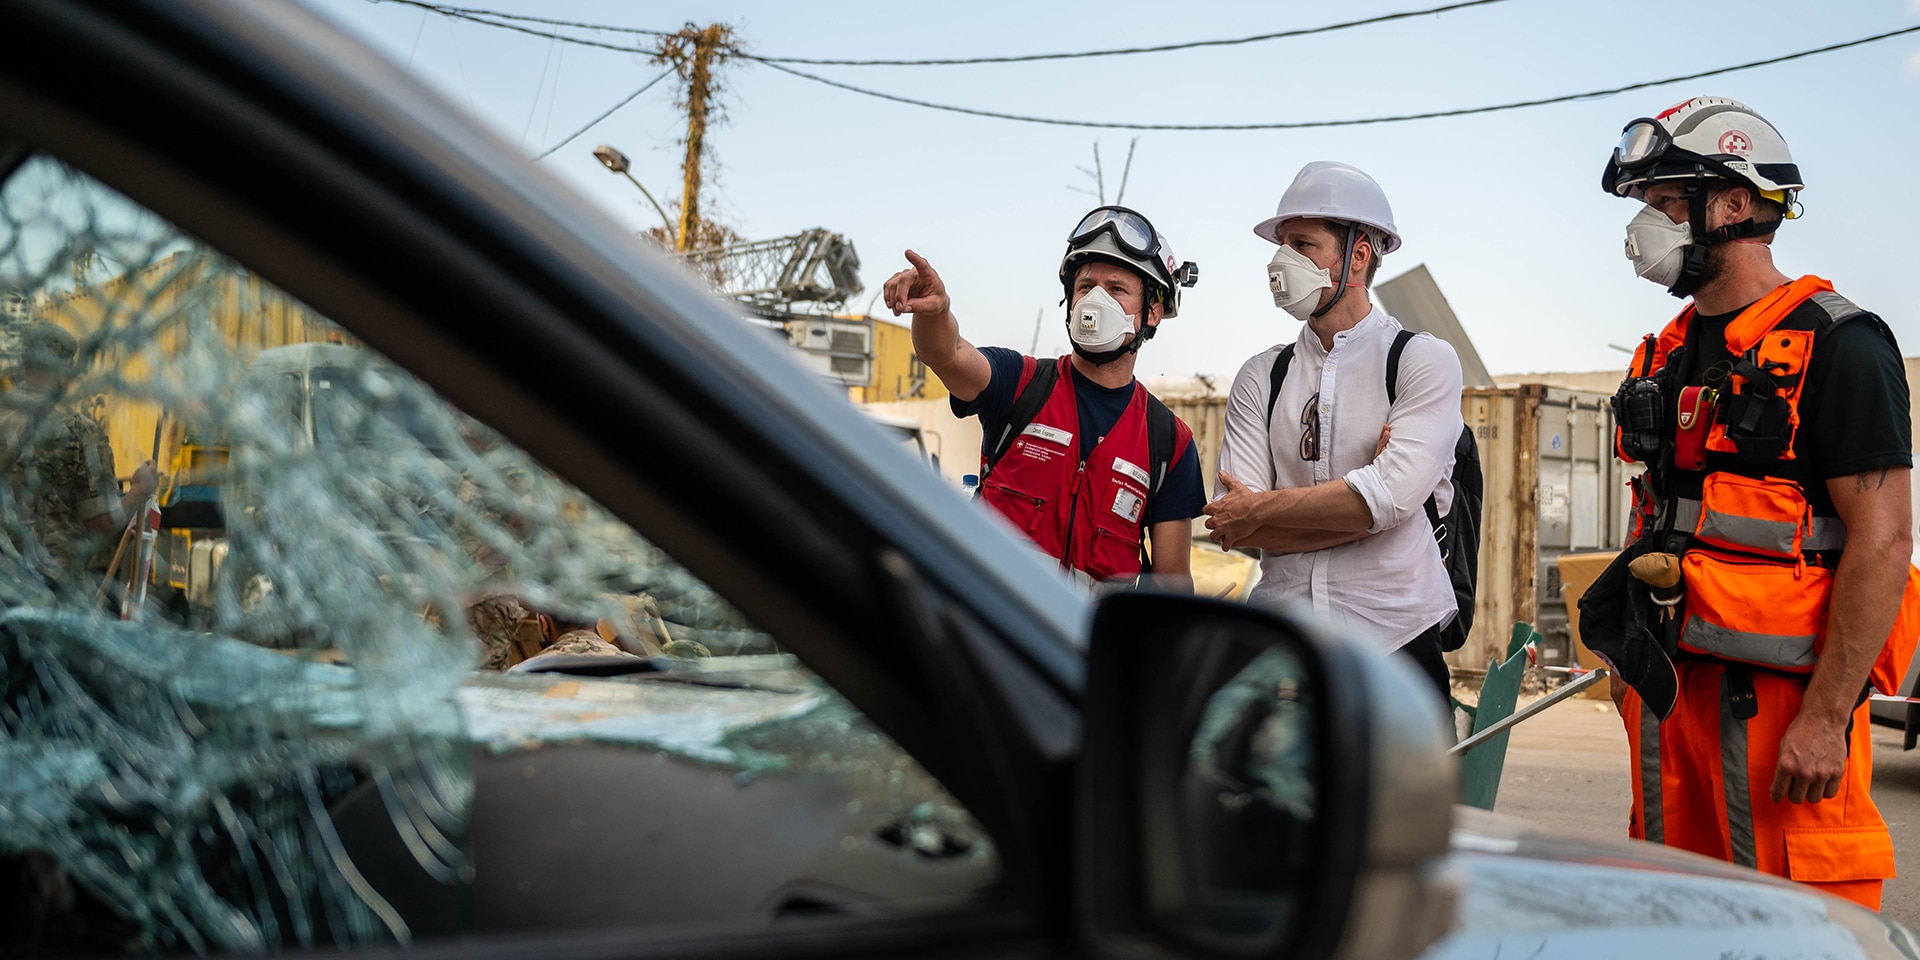 Trois experts de l'unité d'aide humanitaire sont debout près d'une voiture.